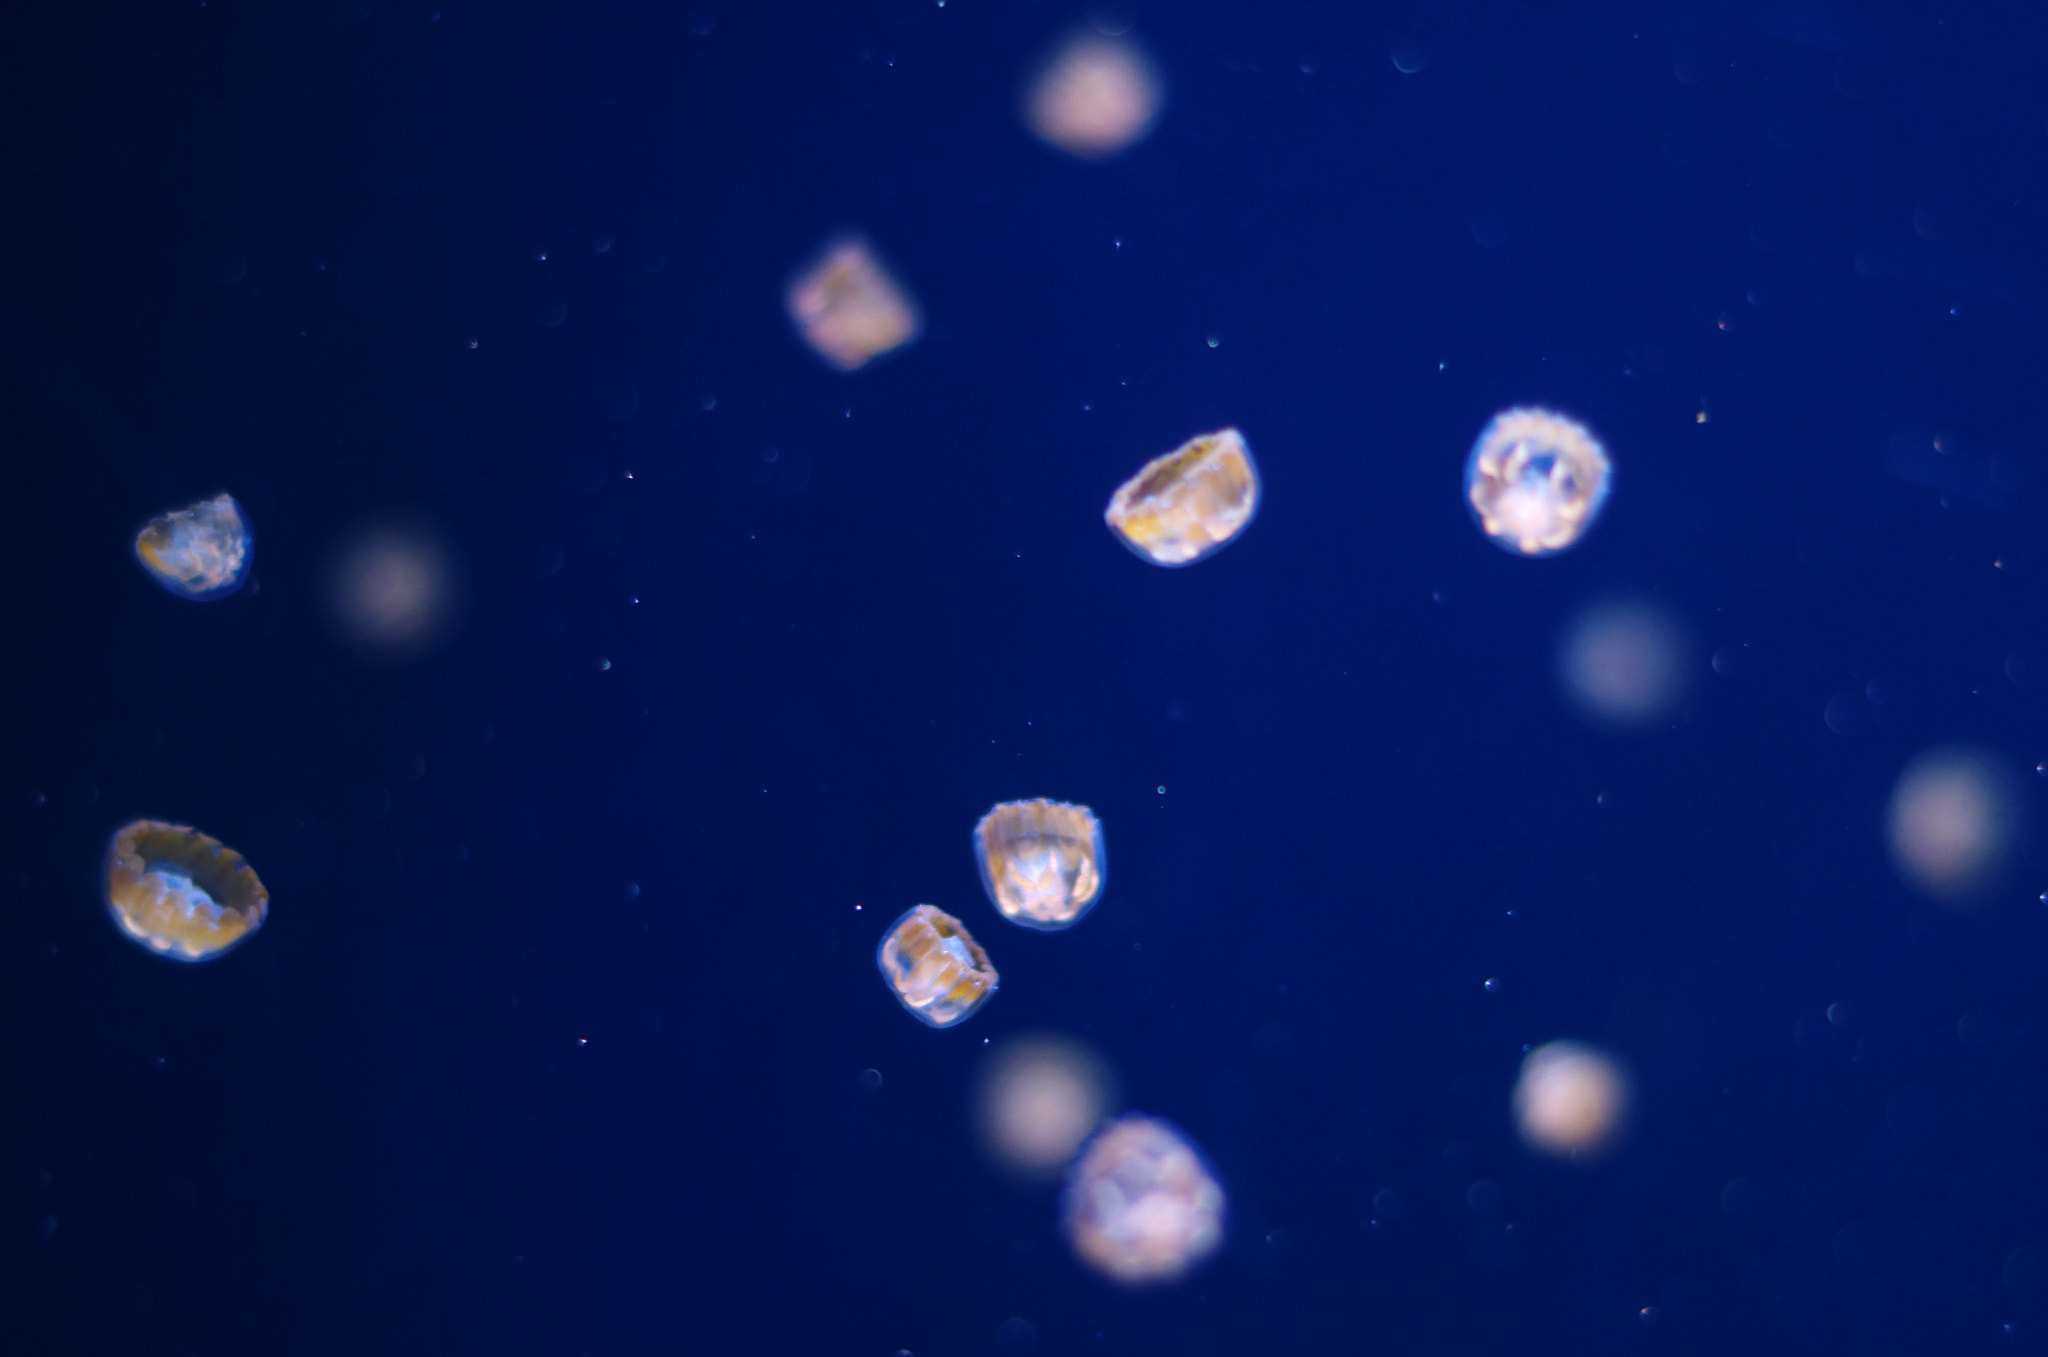 Pentax smc DA 50mm F1.8 sample photo. Jellyfish photography